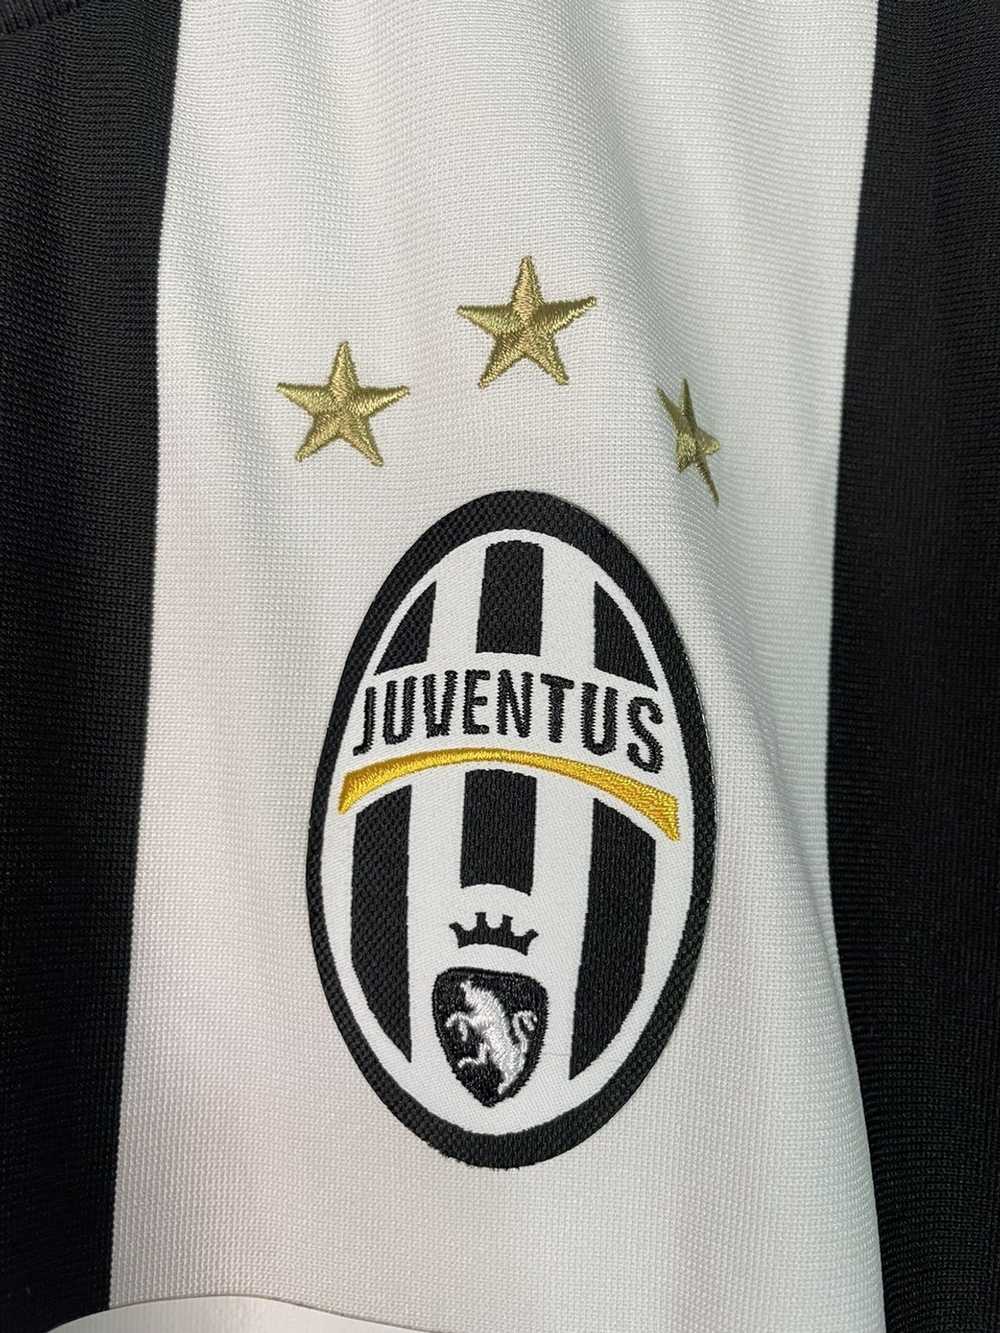 Adidas Juventus 15/ 16 kit jersey striped - image 2